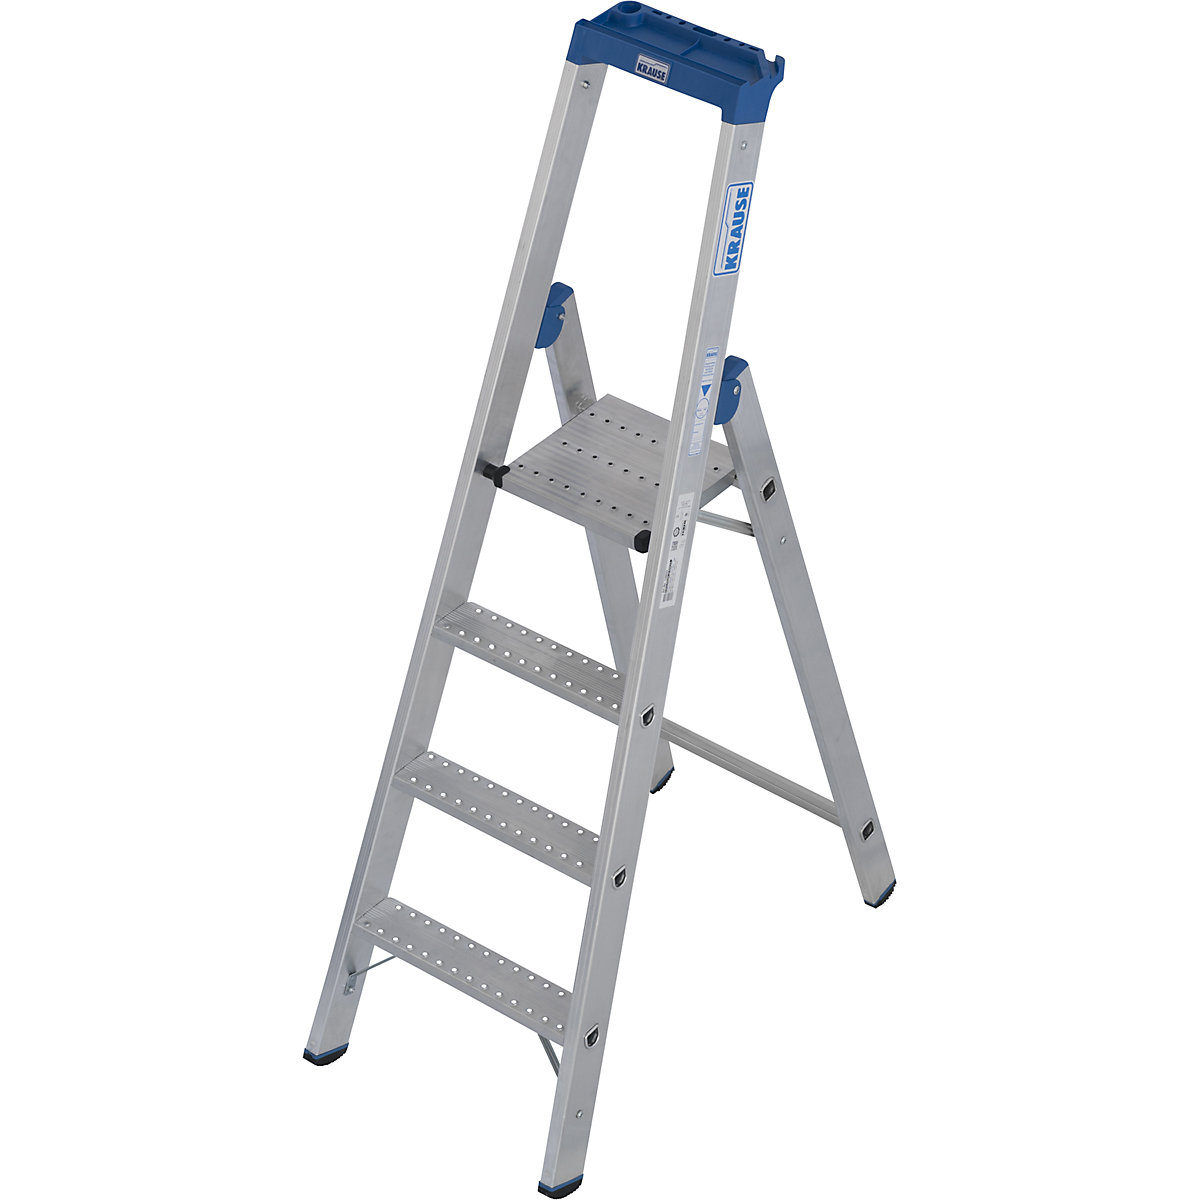 Hliníkový stojací rebrík so stupňami, s protišmykovou úpravou R13 - KRAUSE